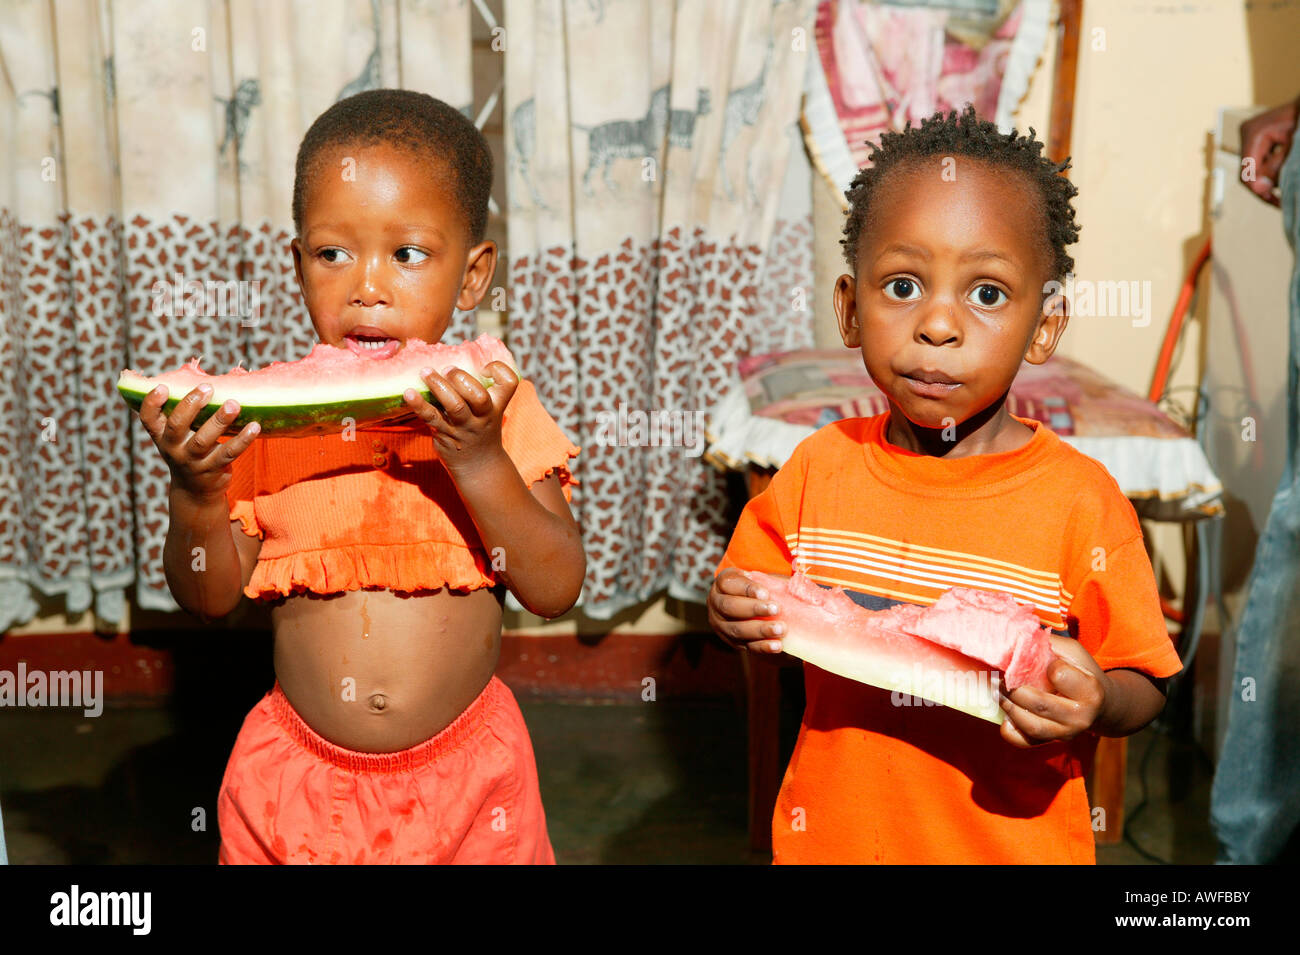 Children eating melon, Gaborone, Botswana, Africa Stock Photo